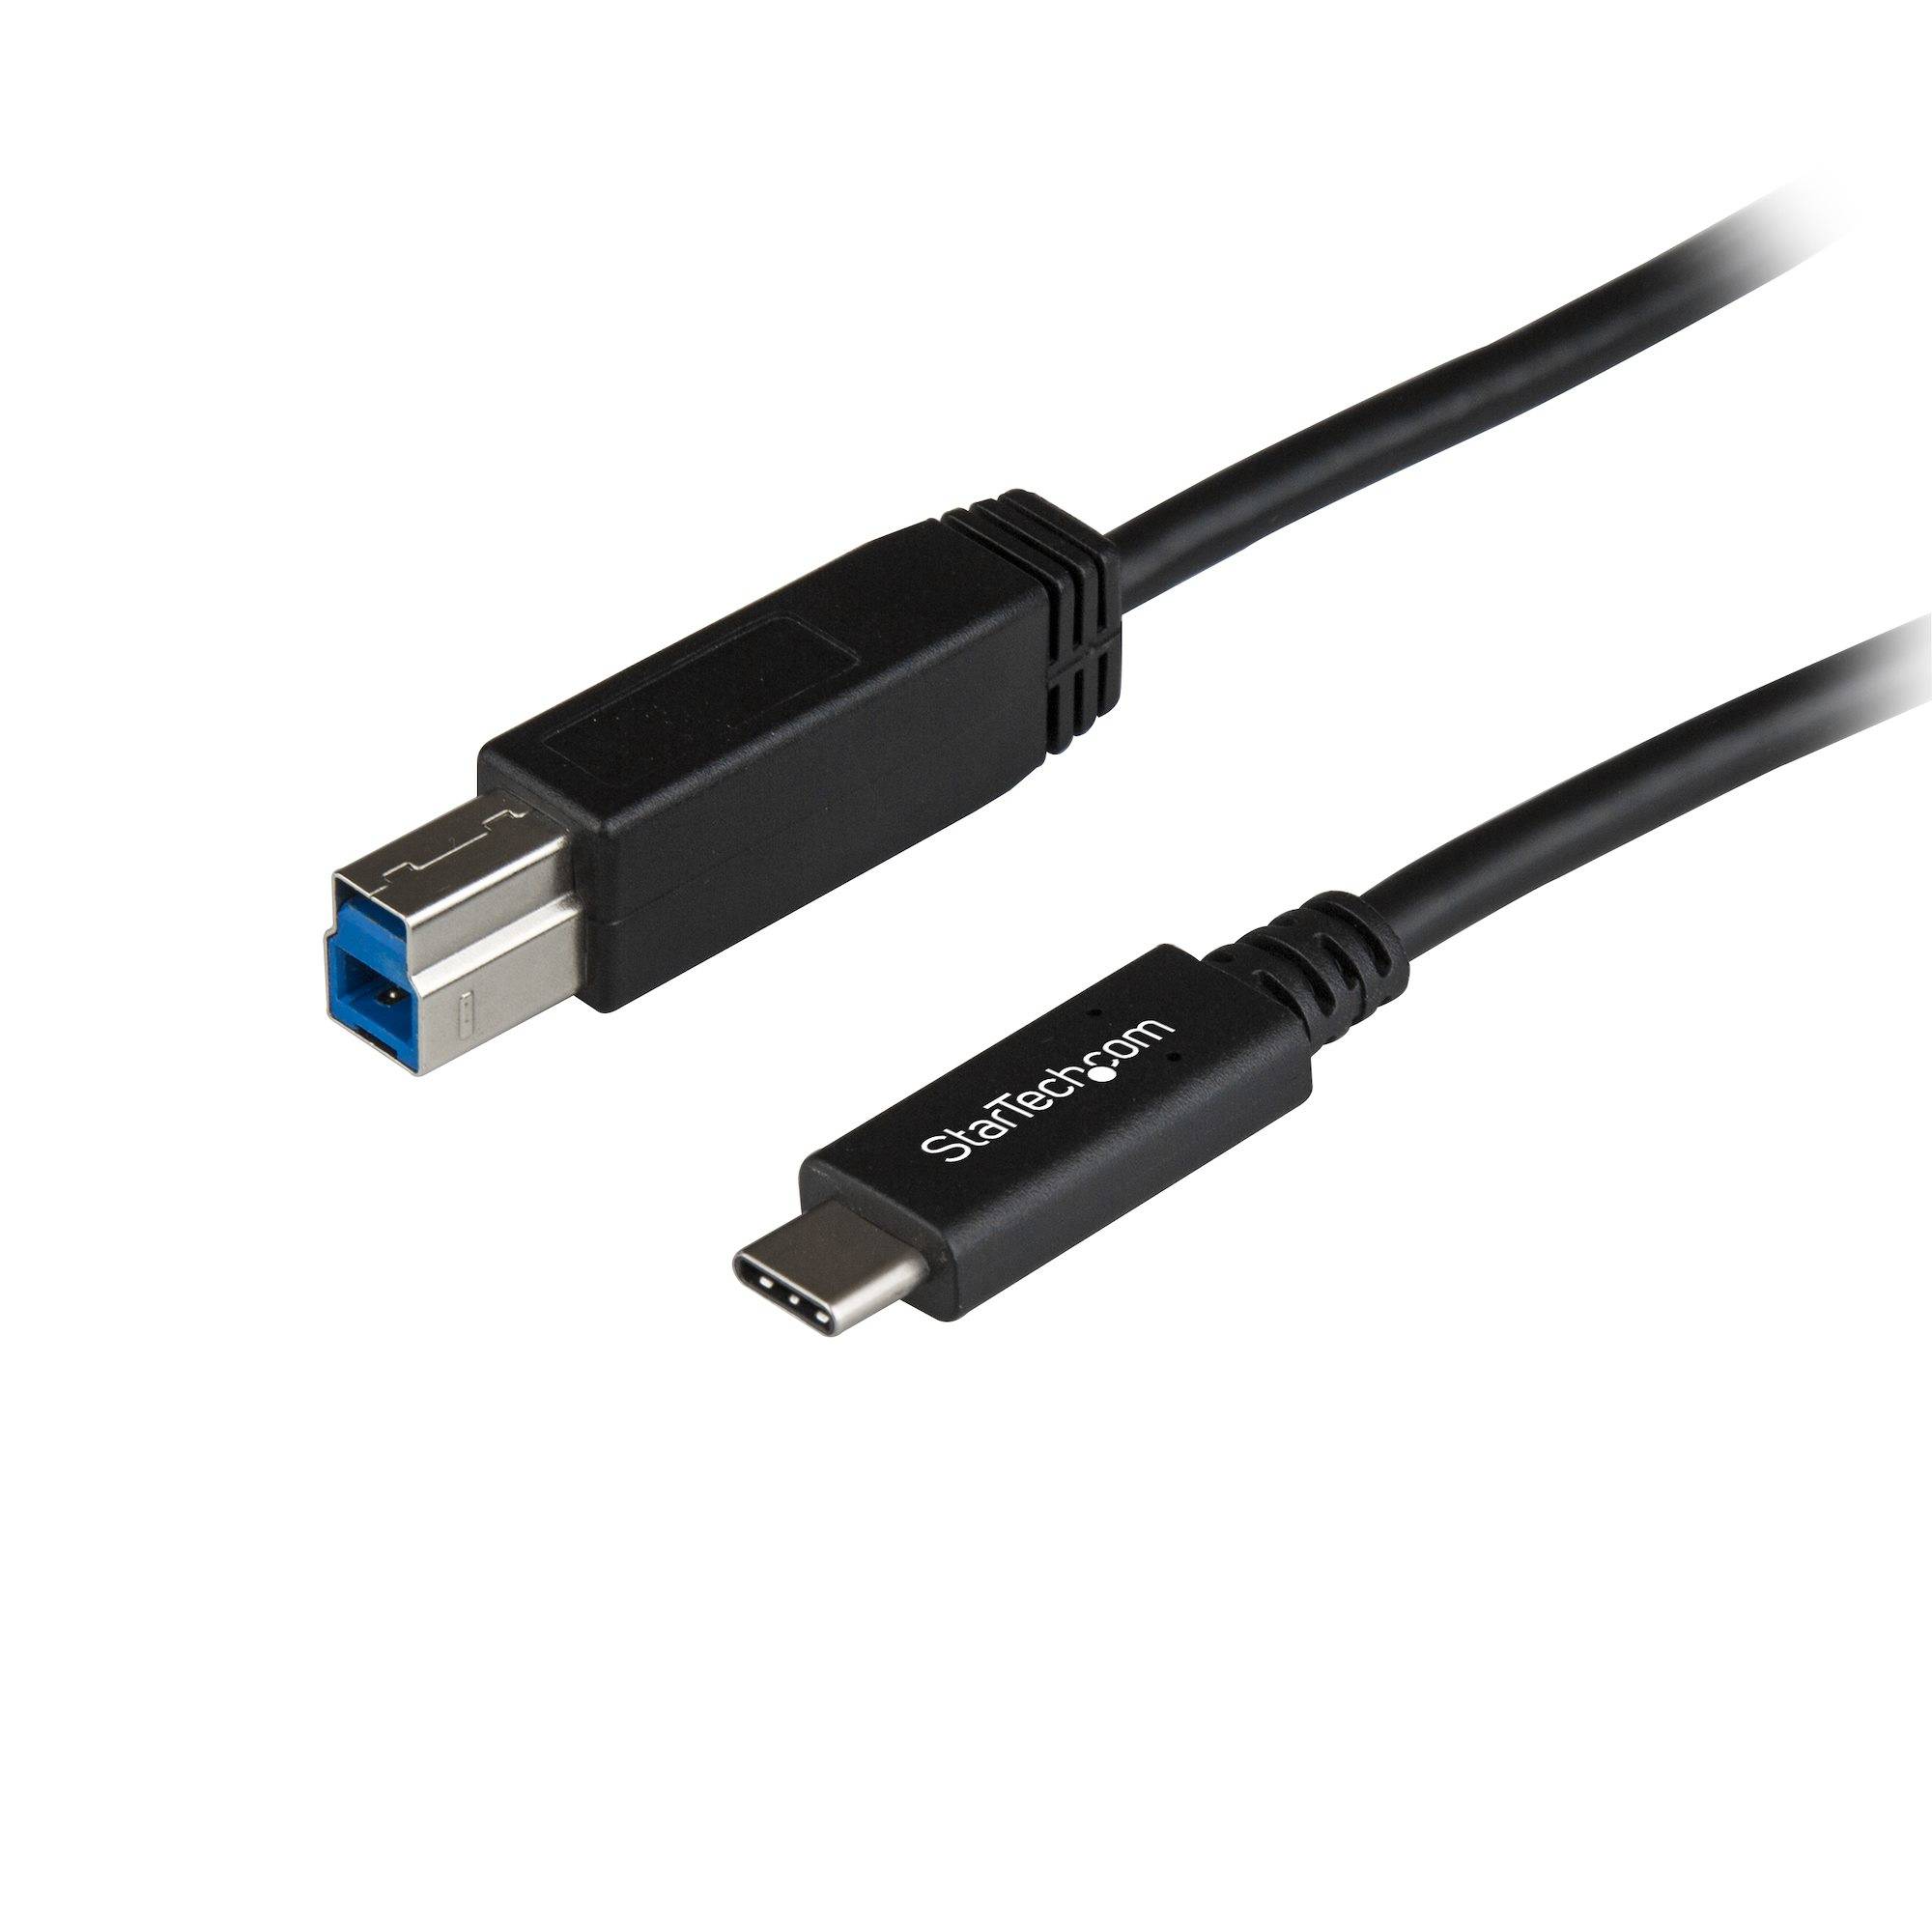 Rca Informatique - Image du produit : 3FT USB TYPE C TO USB TYPE B CABLE USB 3.1 GEN 2 10GBPS